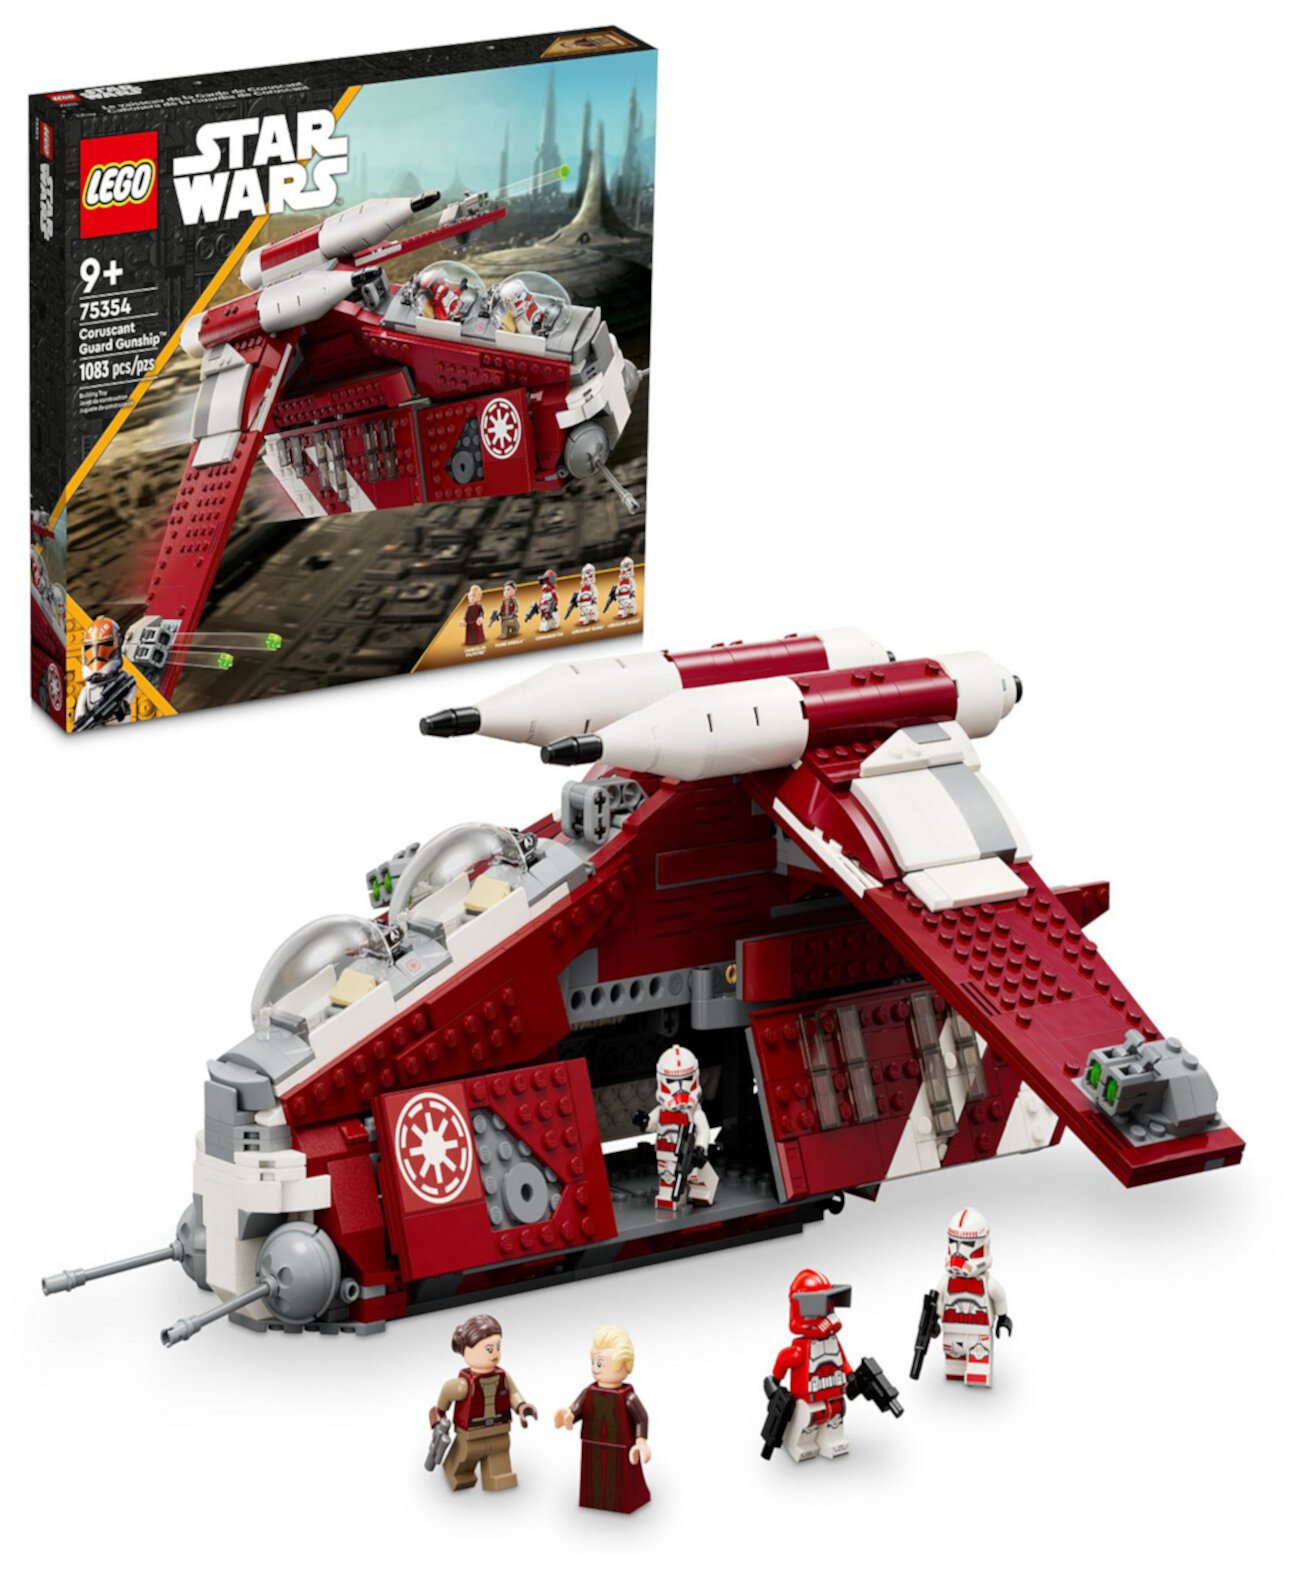 Star Wars 75354 Набор игрушечных боевых кораблей Coruscant Guard Guard Lego